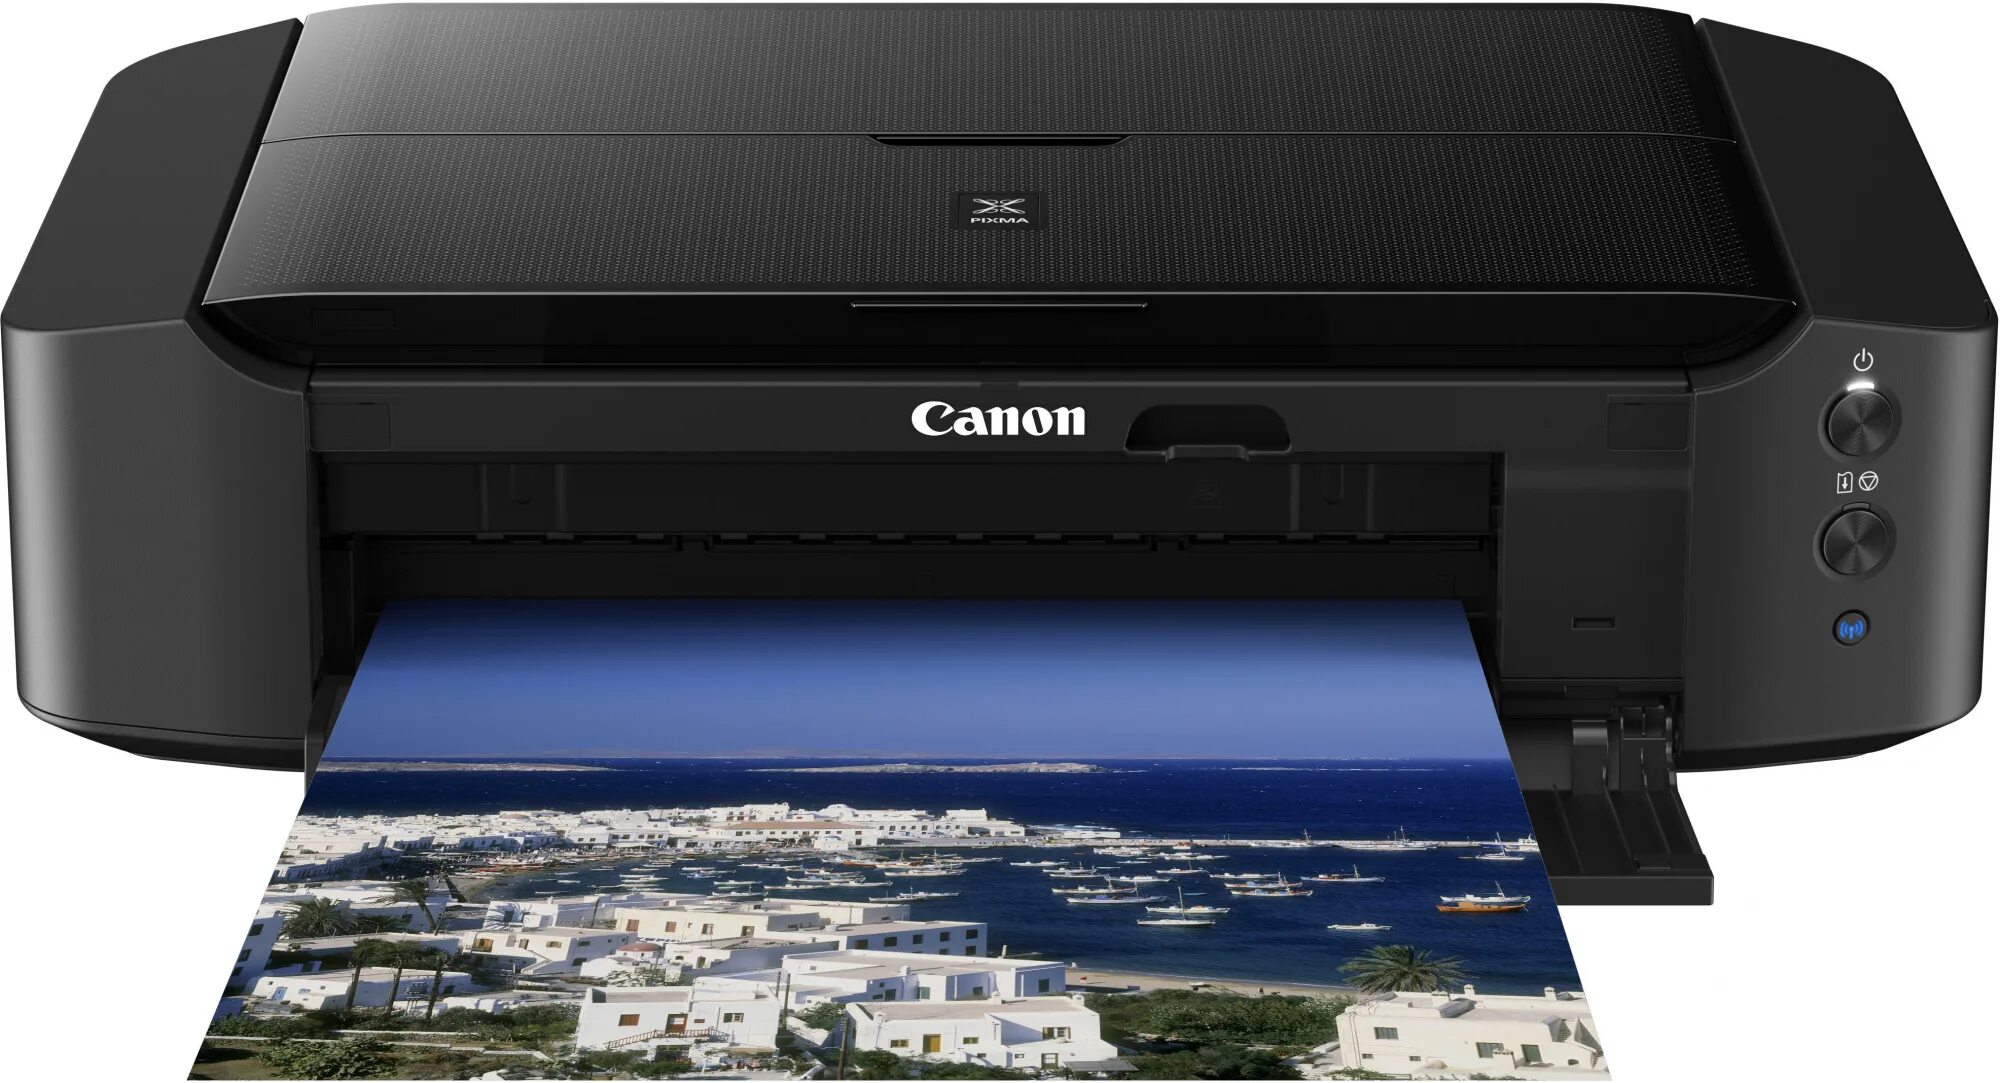 Принтер струйный цветной Canon PIXMA. Canon PIXMA 8740. Принтер струйный Кэнон пиксма 8740. Принтер Кэнон пиксма цветной струйный.